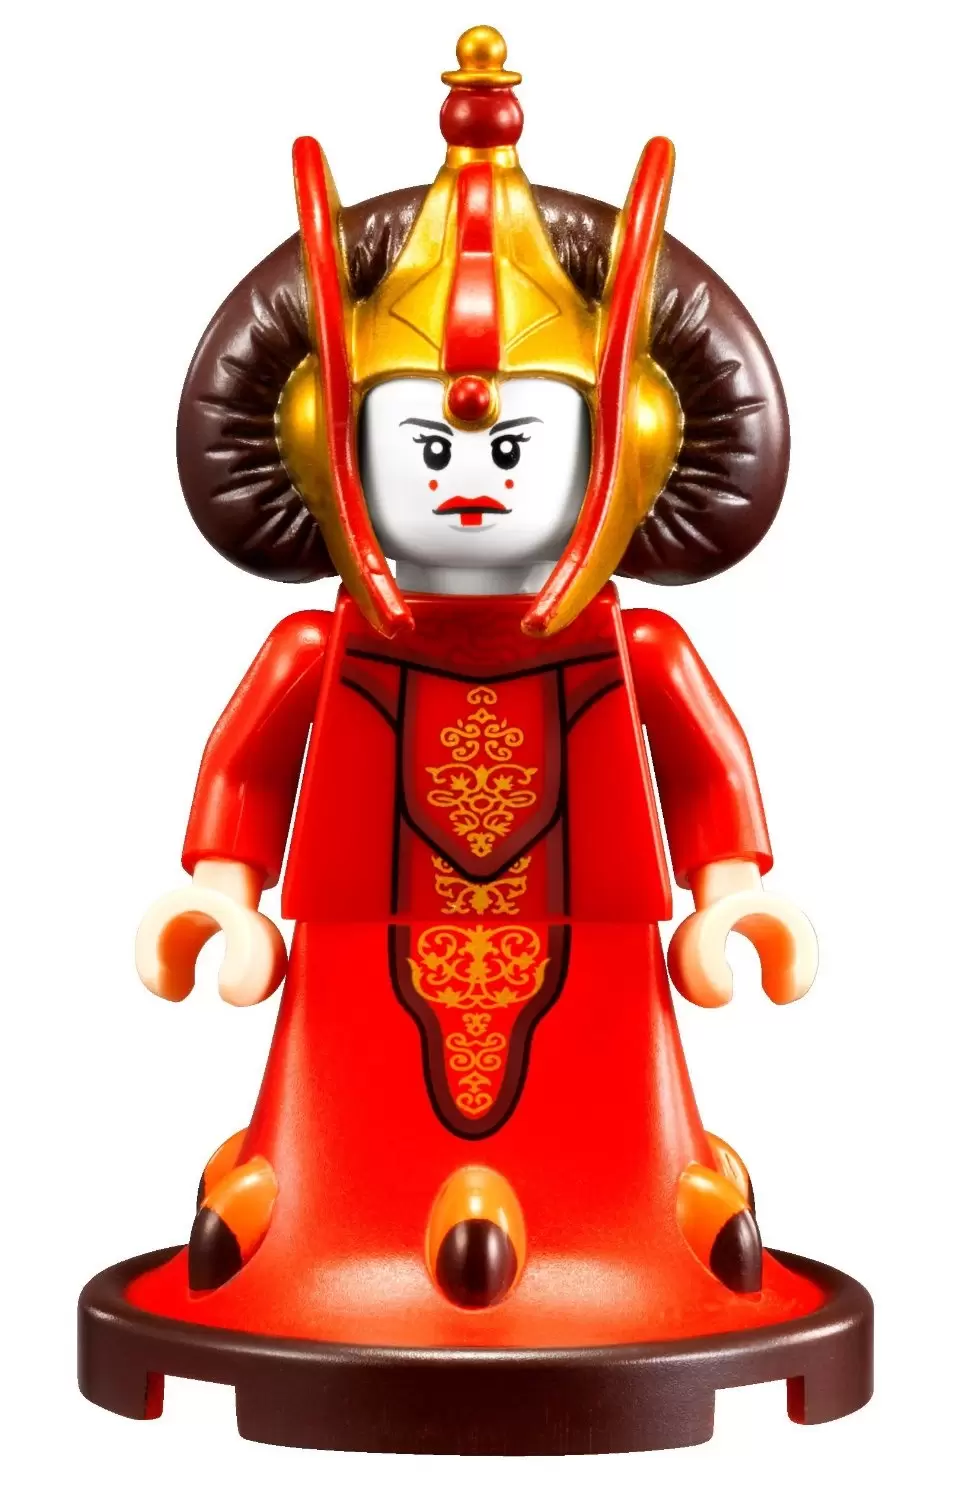 LEGO Star Wars Minifigs - Queen Amidala